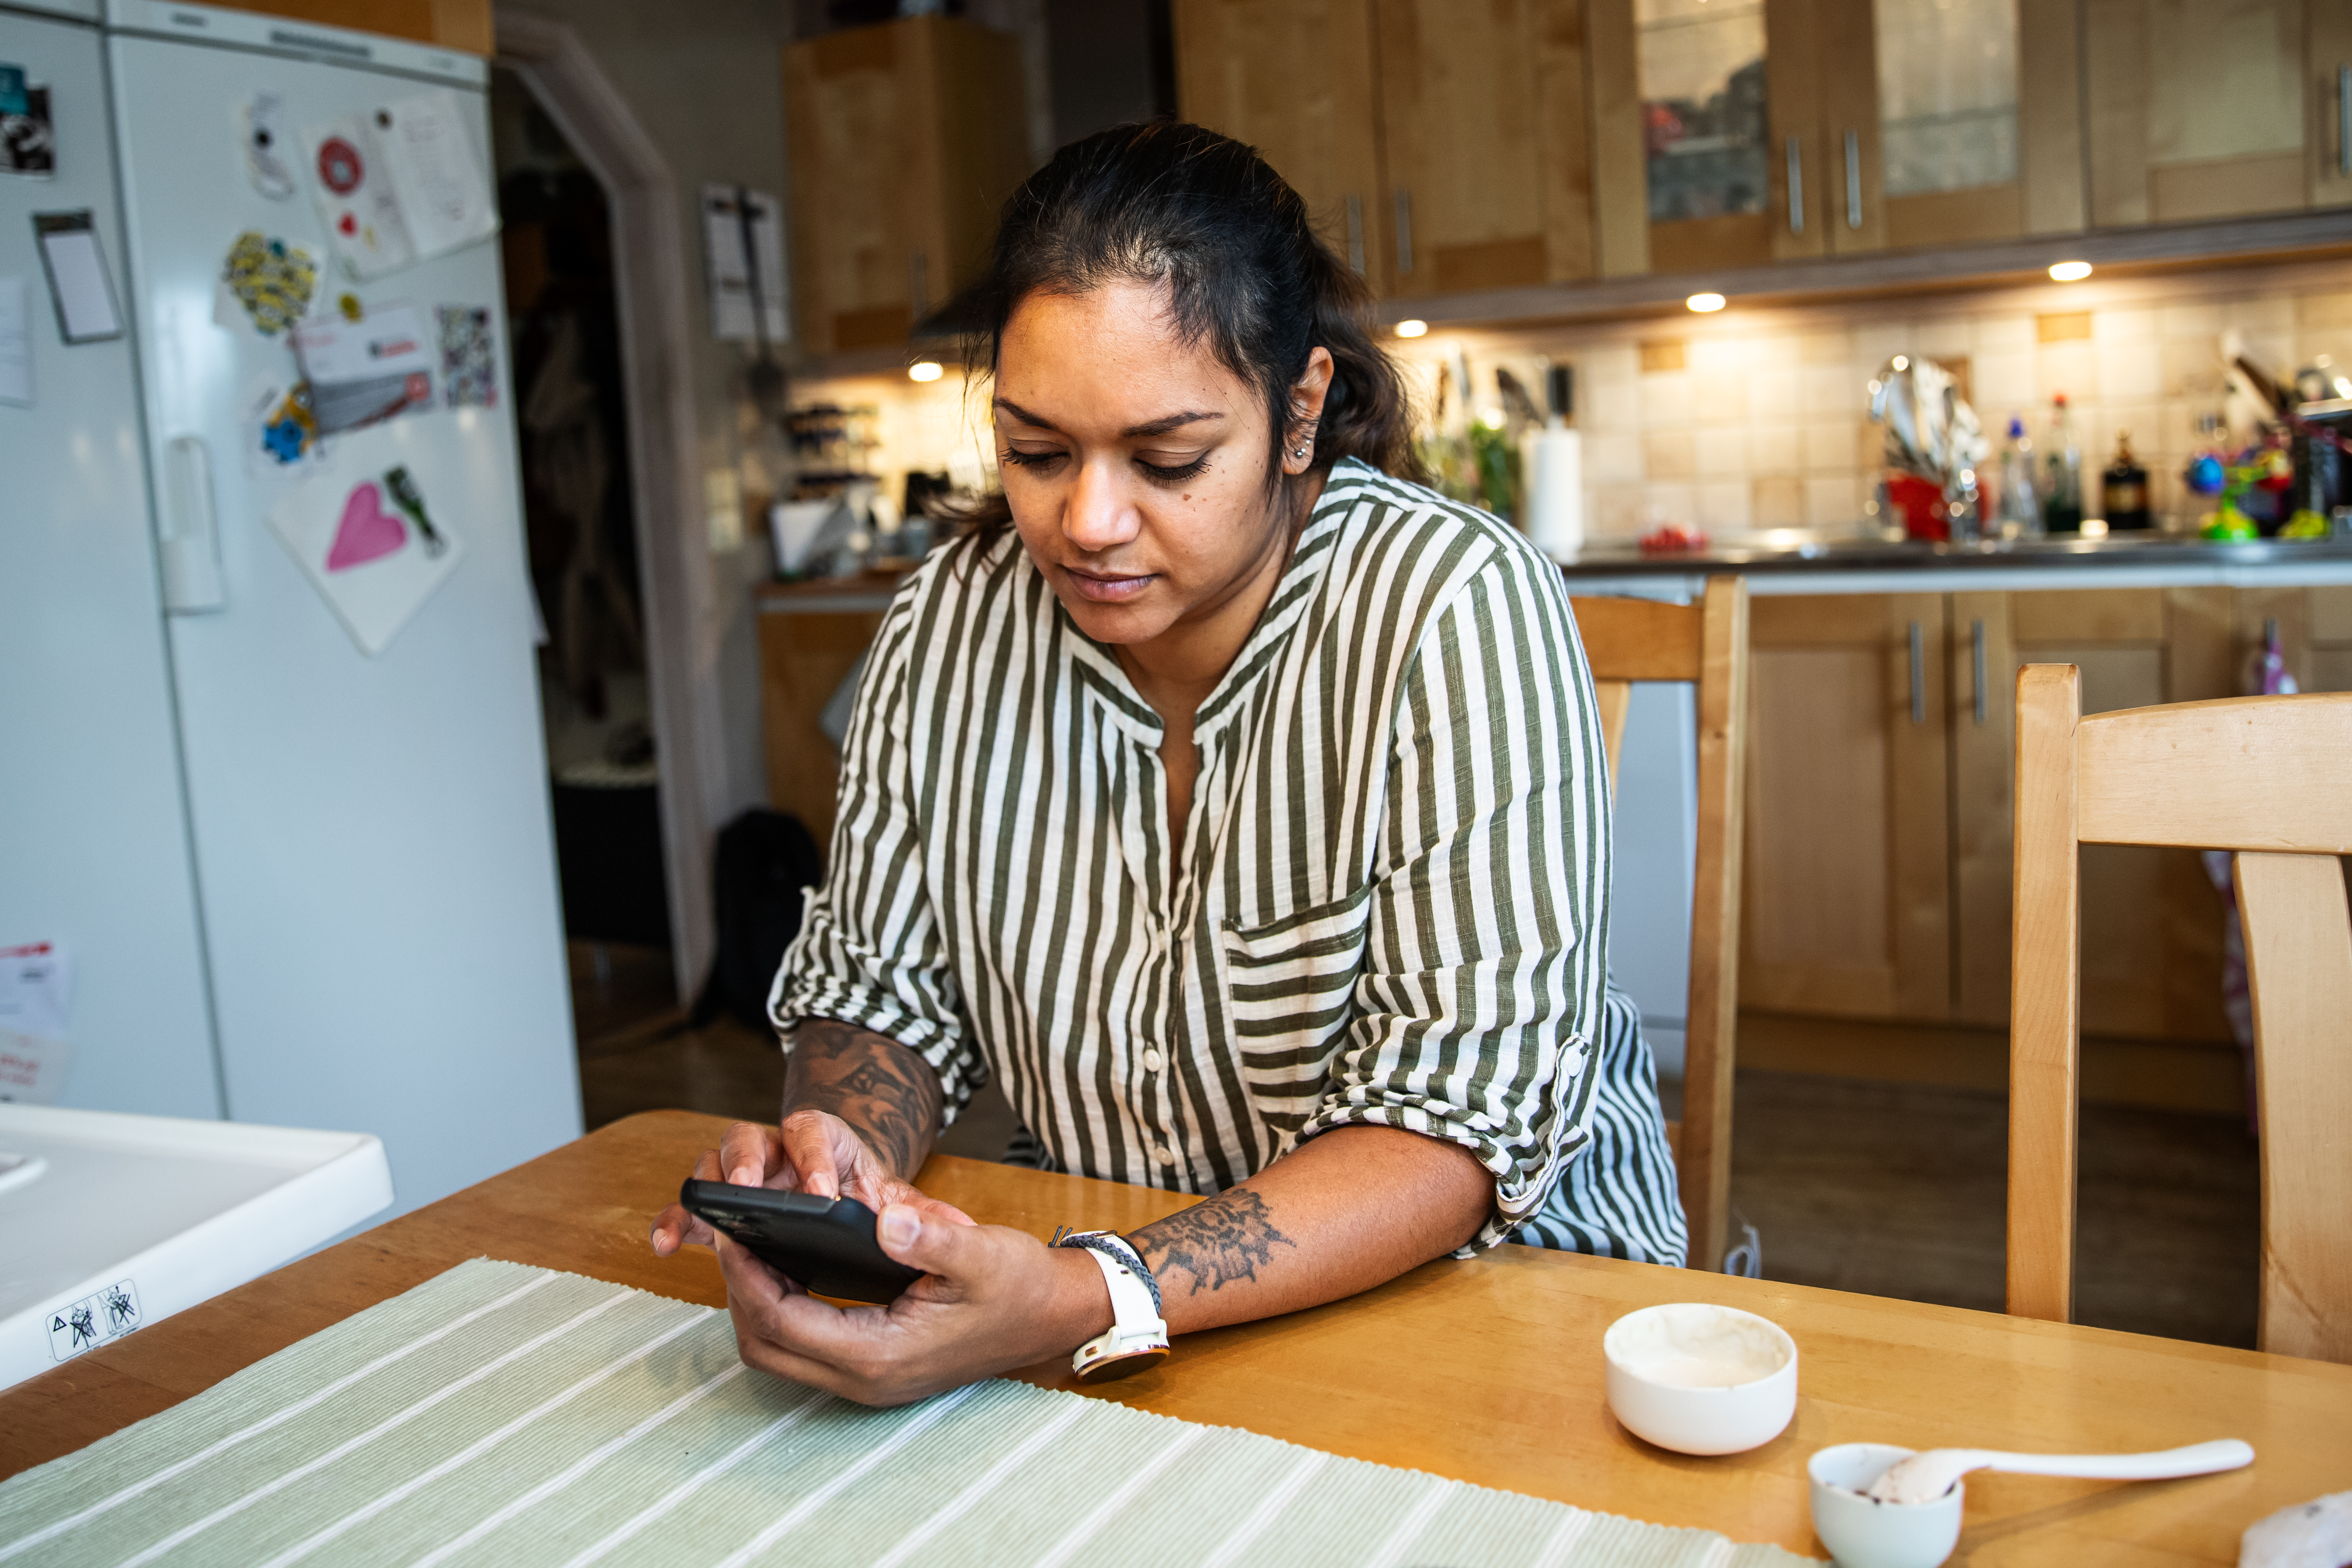 Kvinna i randig skjorta sitter vid köksbord och tittar i mobil.